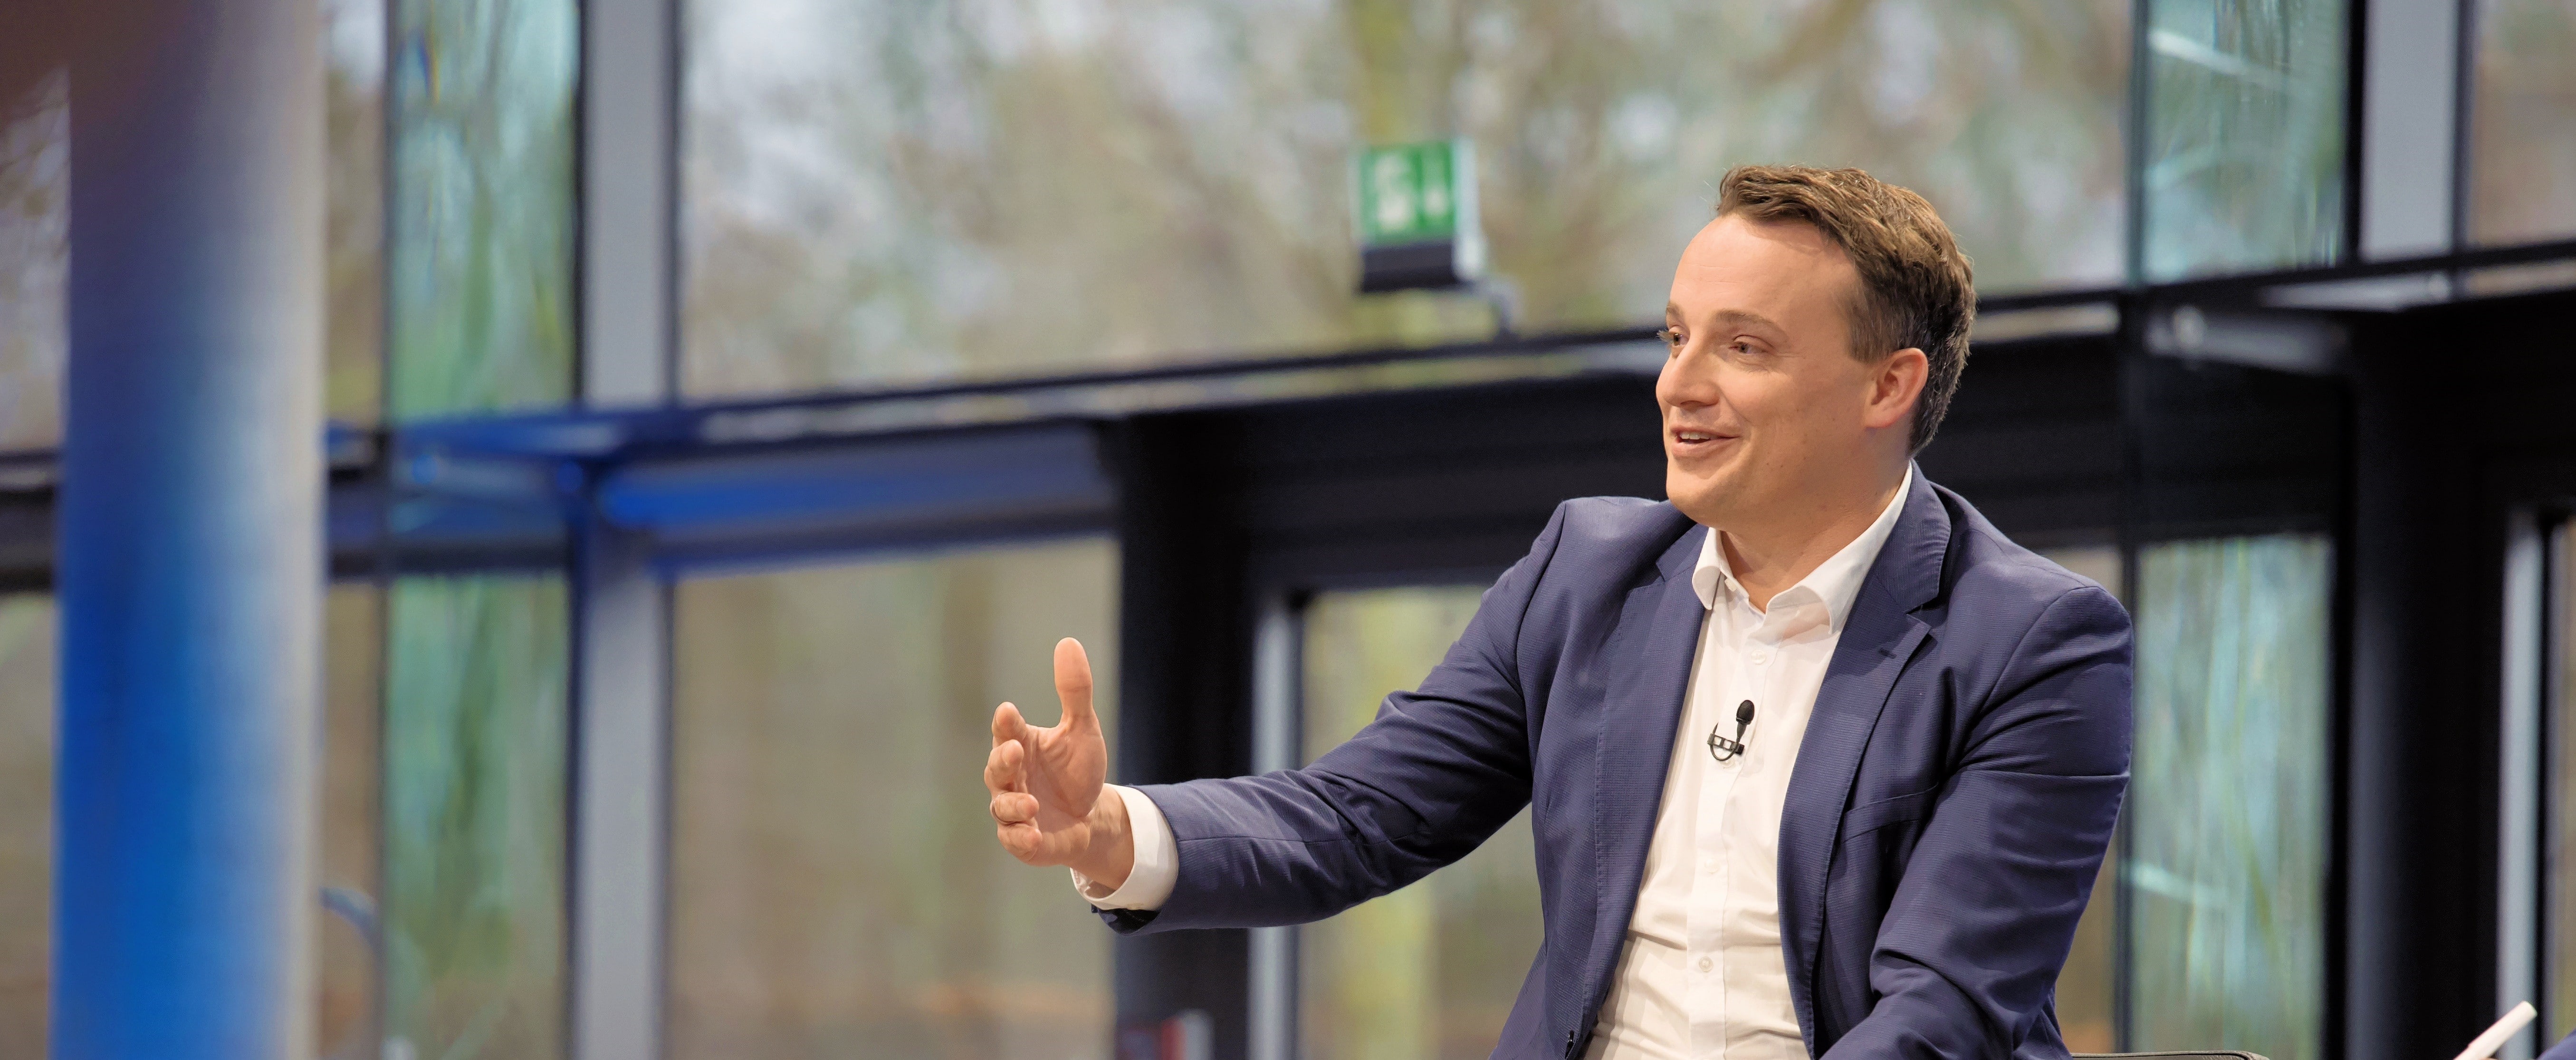 CEO de SAP, Christian Klein: Cuando las personas y la tecnología se unen, suceden cosas maravillosas